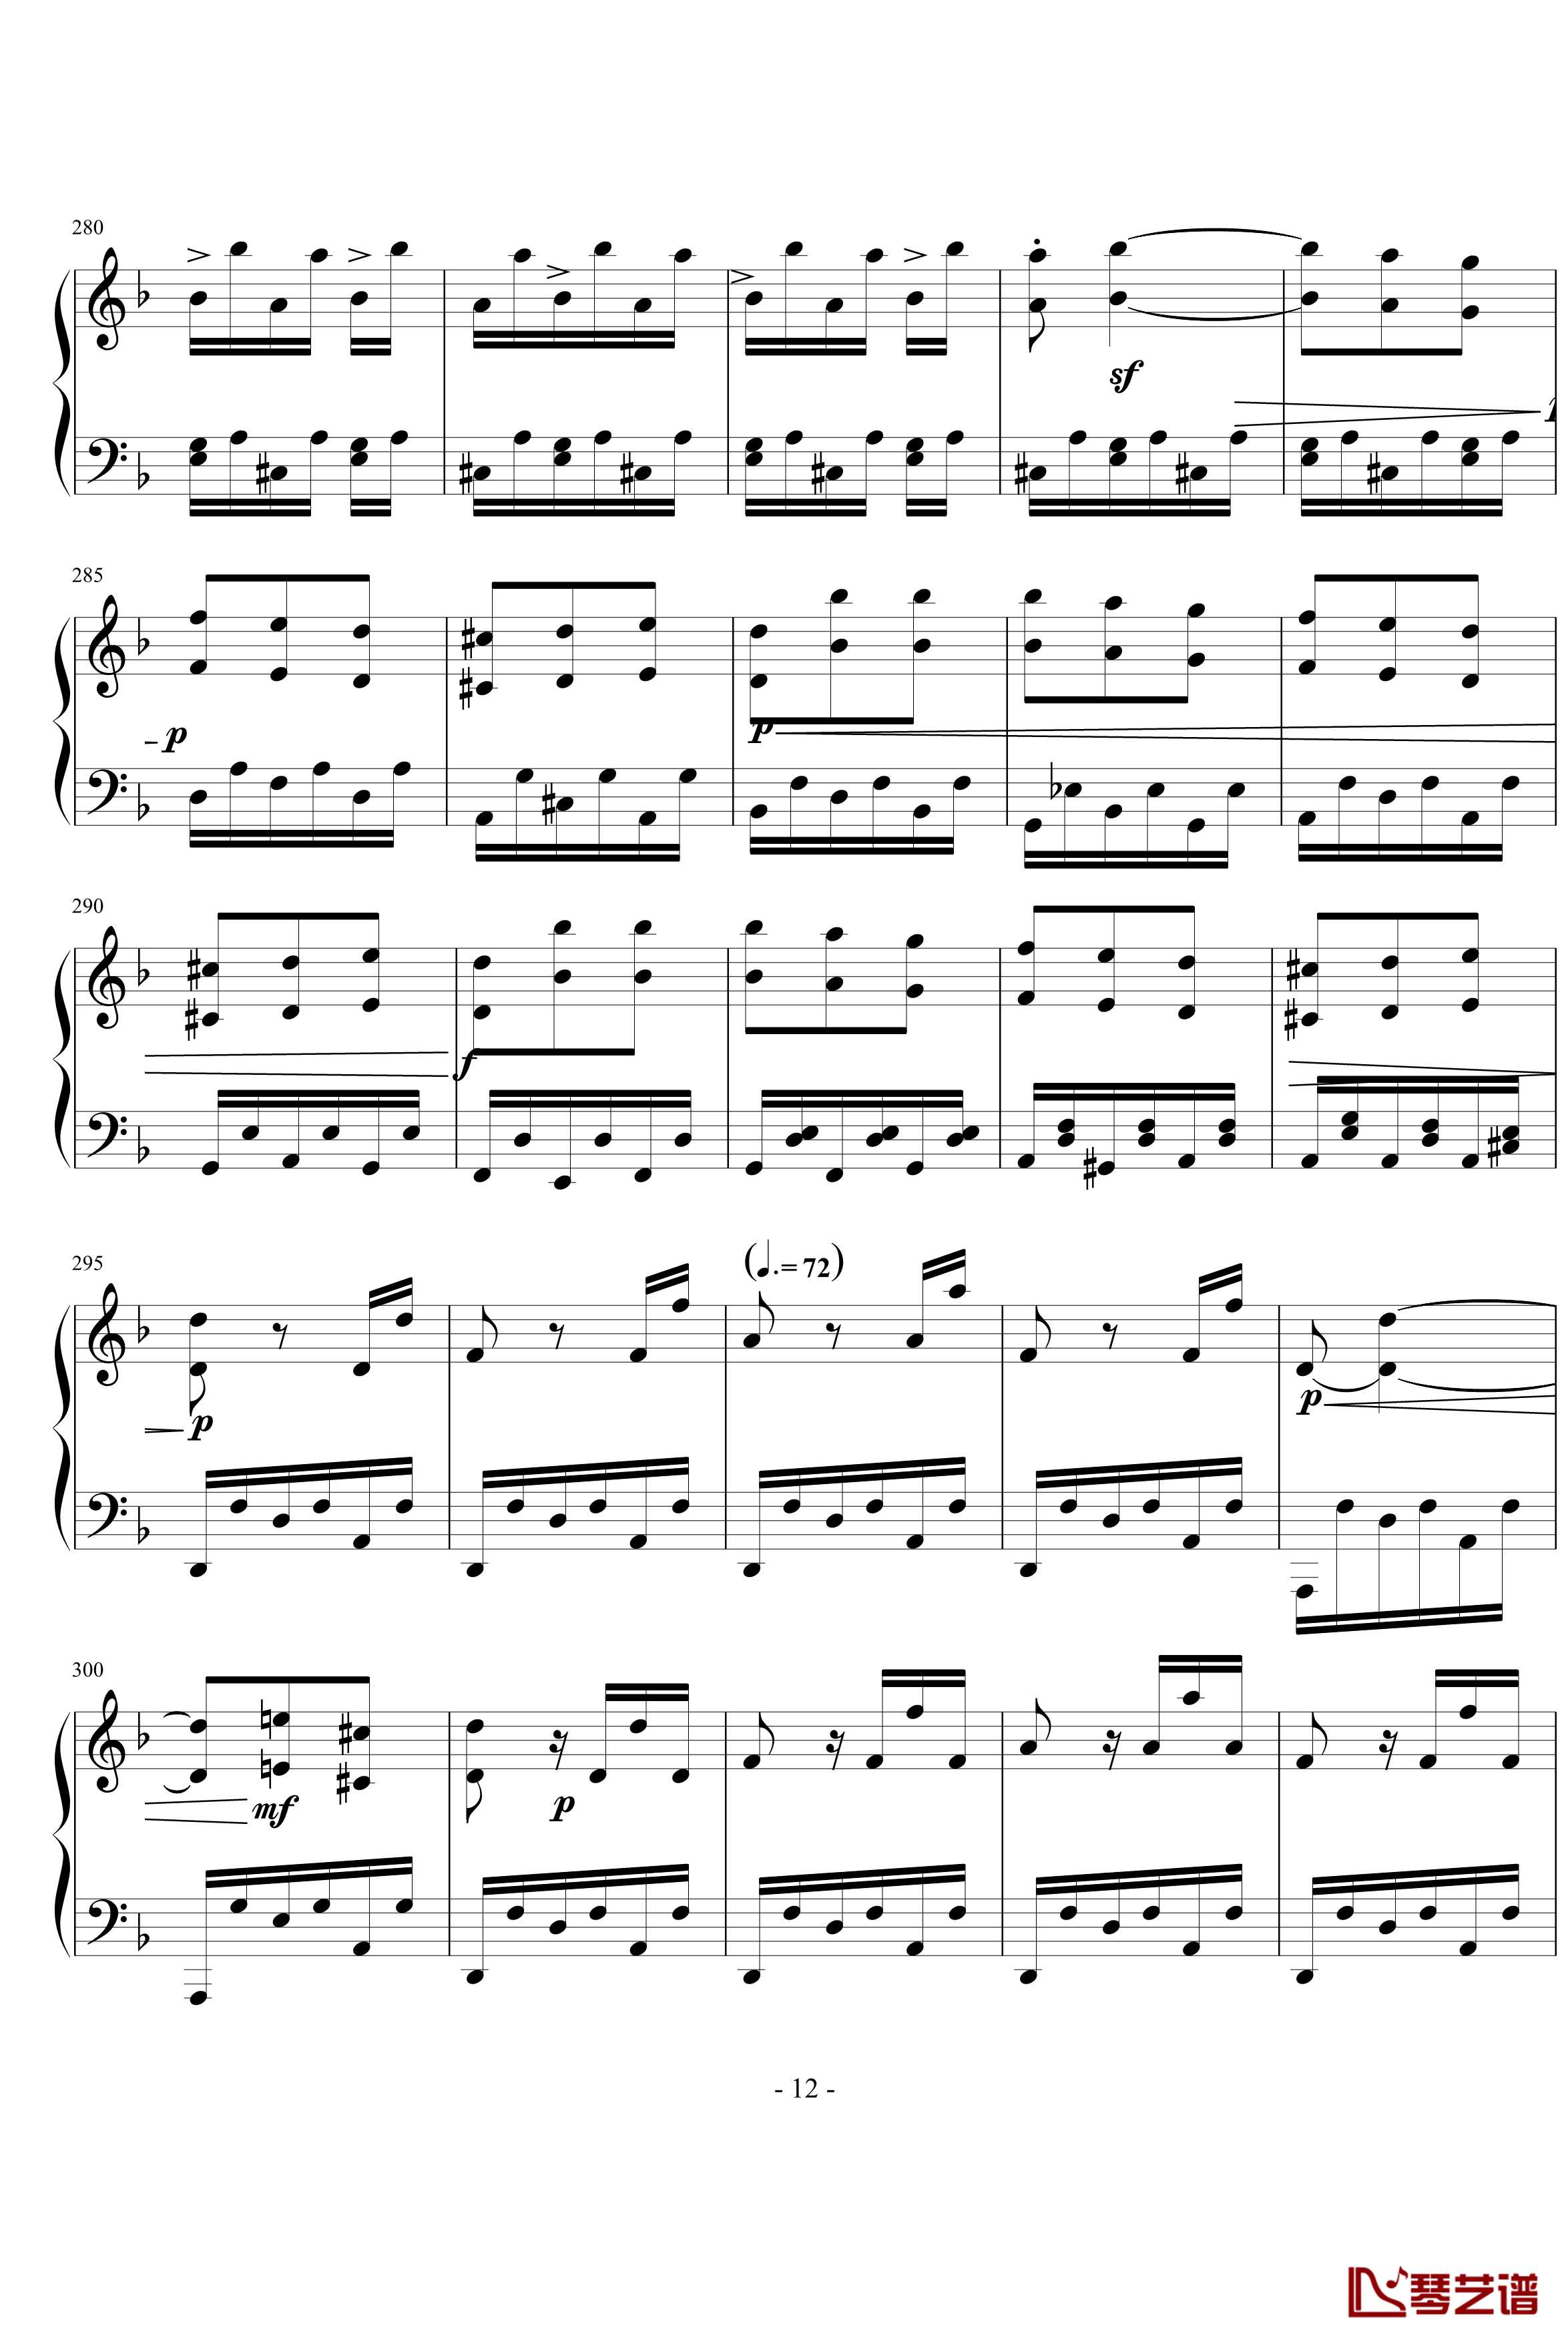 暴风雨第三乐章钢琴谱-贝多芬-beethoven12